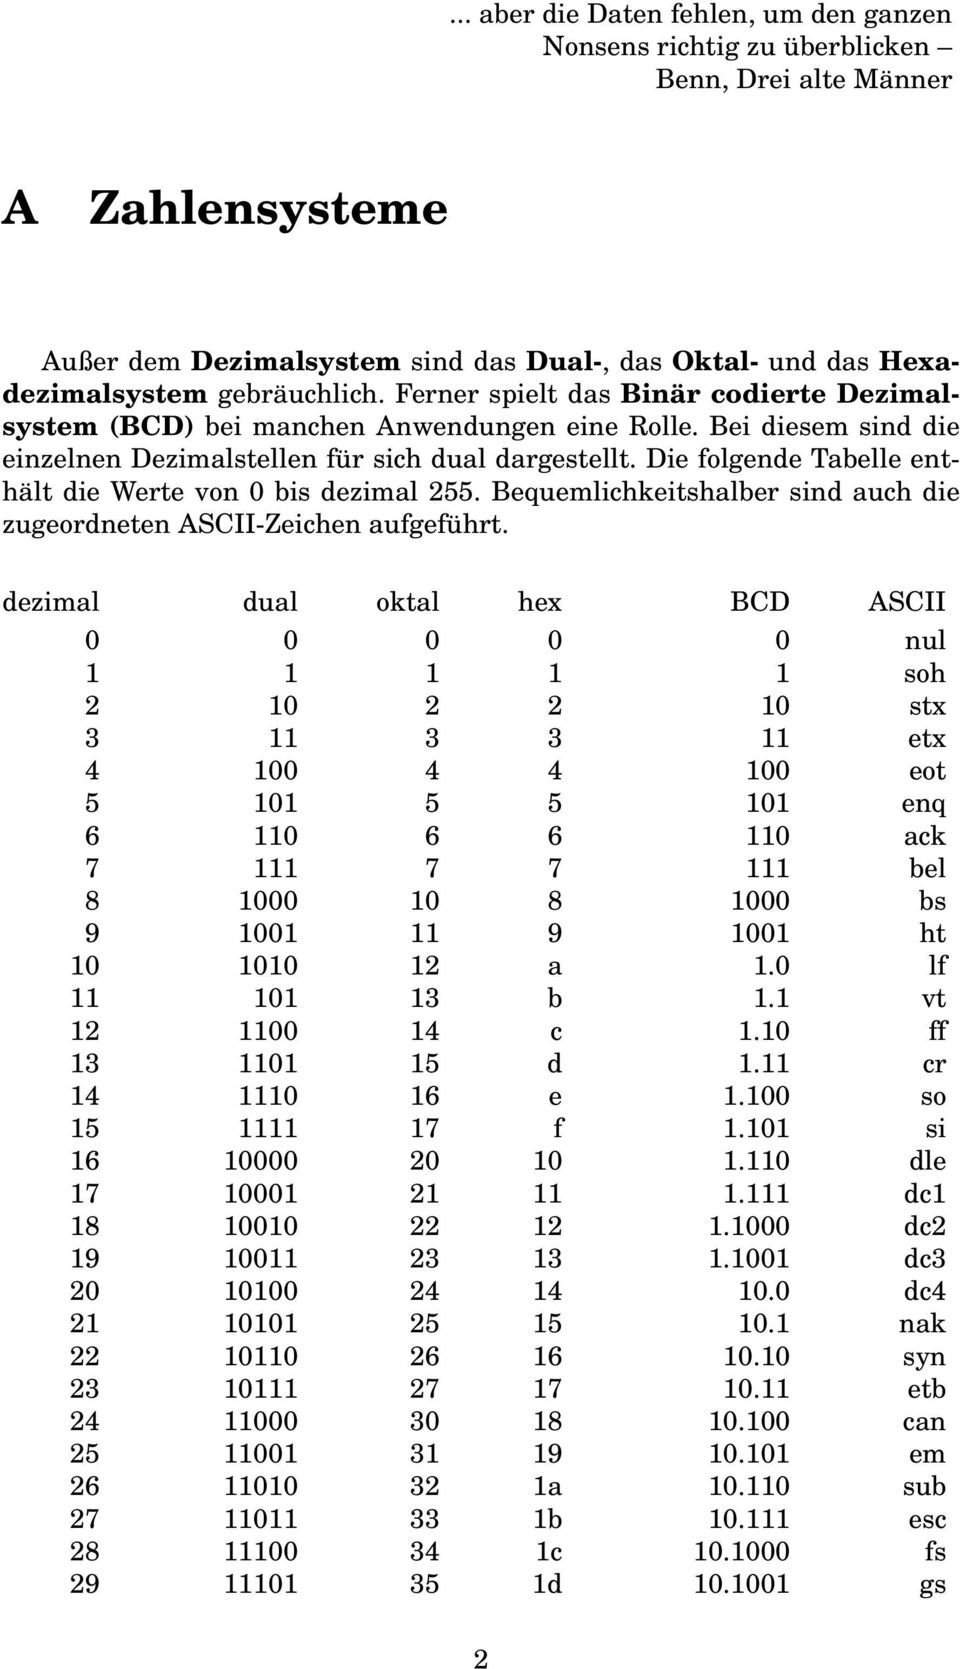 Die folgende Tabelle enthält die Werte von 0 bis dezimal 255. Bequemlichkeitshalber sind auch die zugeordneten ASCII-Zeichen aufgeführt.